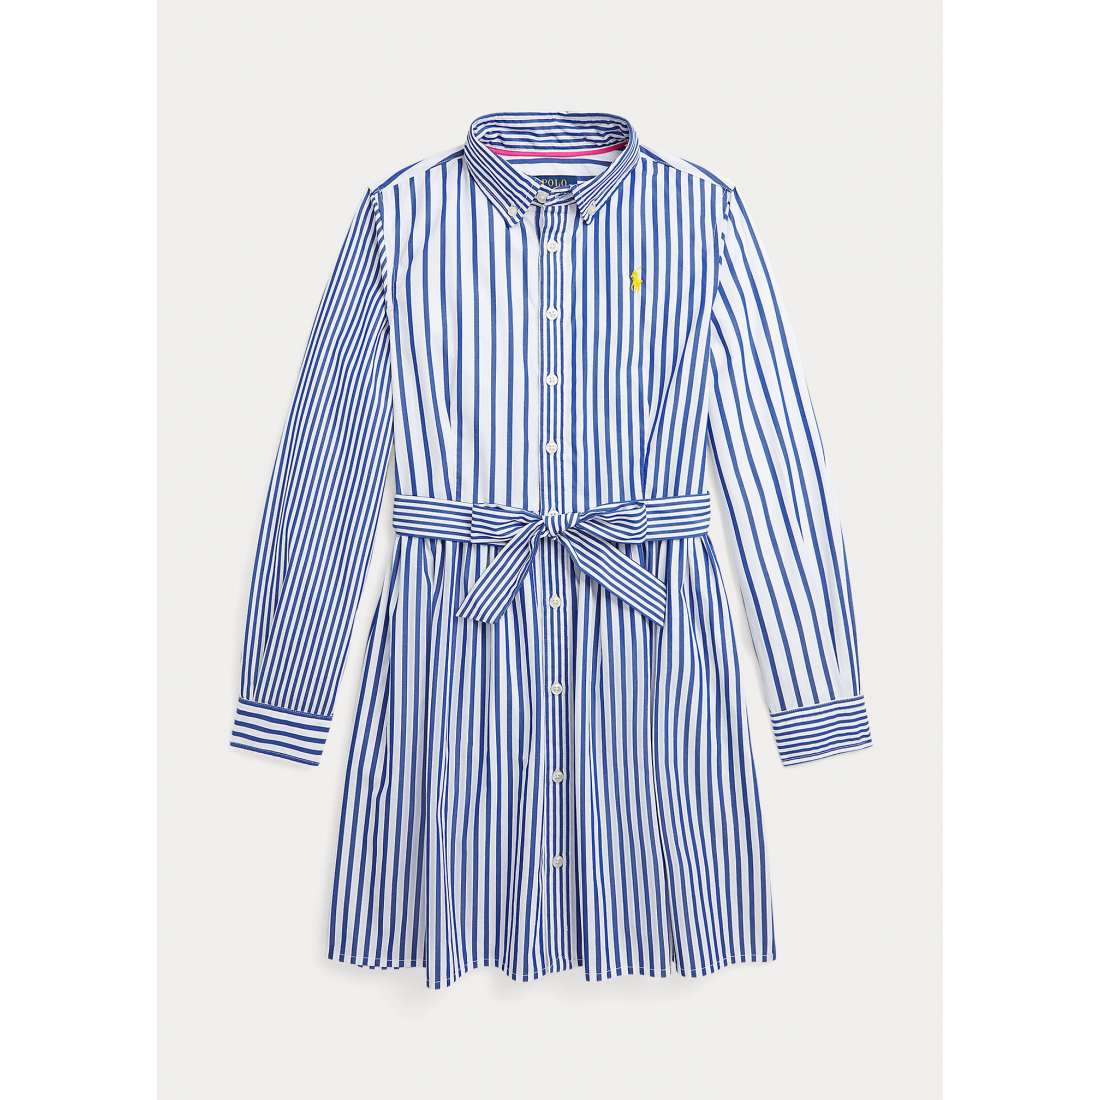 'Striped Fun' Hemdkleid für große Mädchen